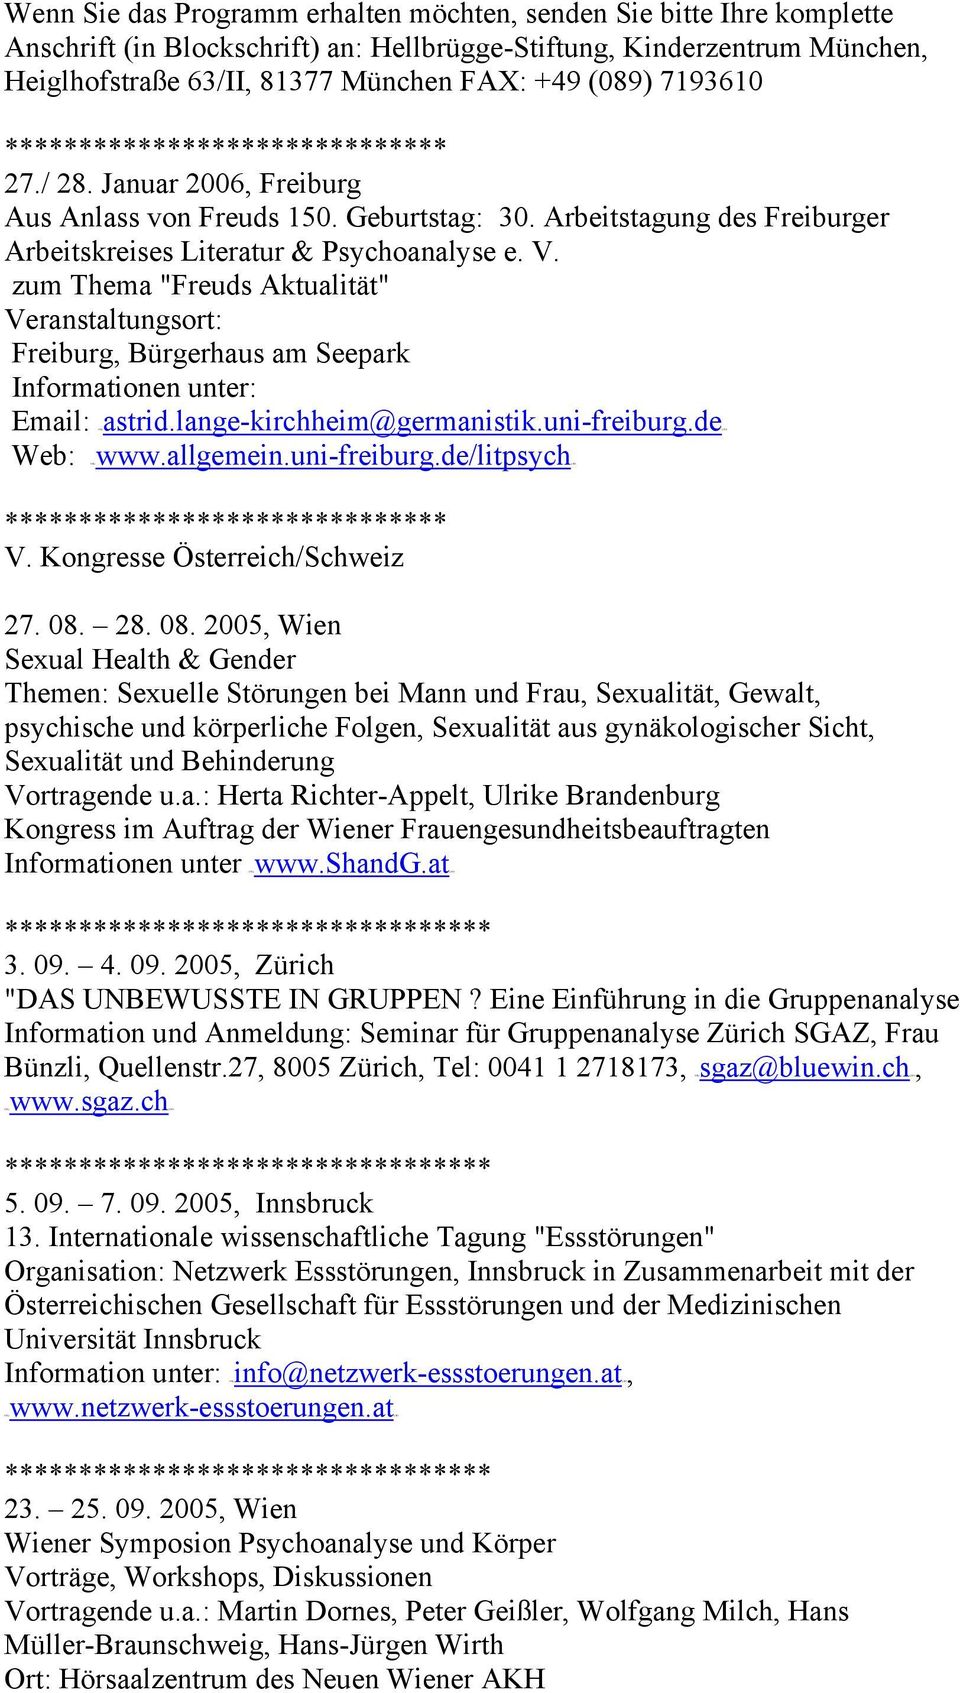 zum Thema "Freuds Aktualität" Veranstaltungsort: Freiburg, Bürgerhaus am Seepark Informationen unter: Email: HTUastrid.lange-kirchheim@germanistik.uni-freiburg.deUTH Web: HTUwww.allgemein.